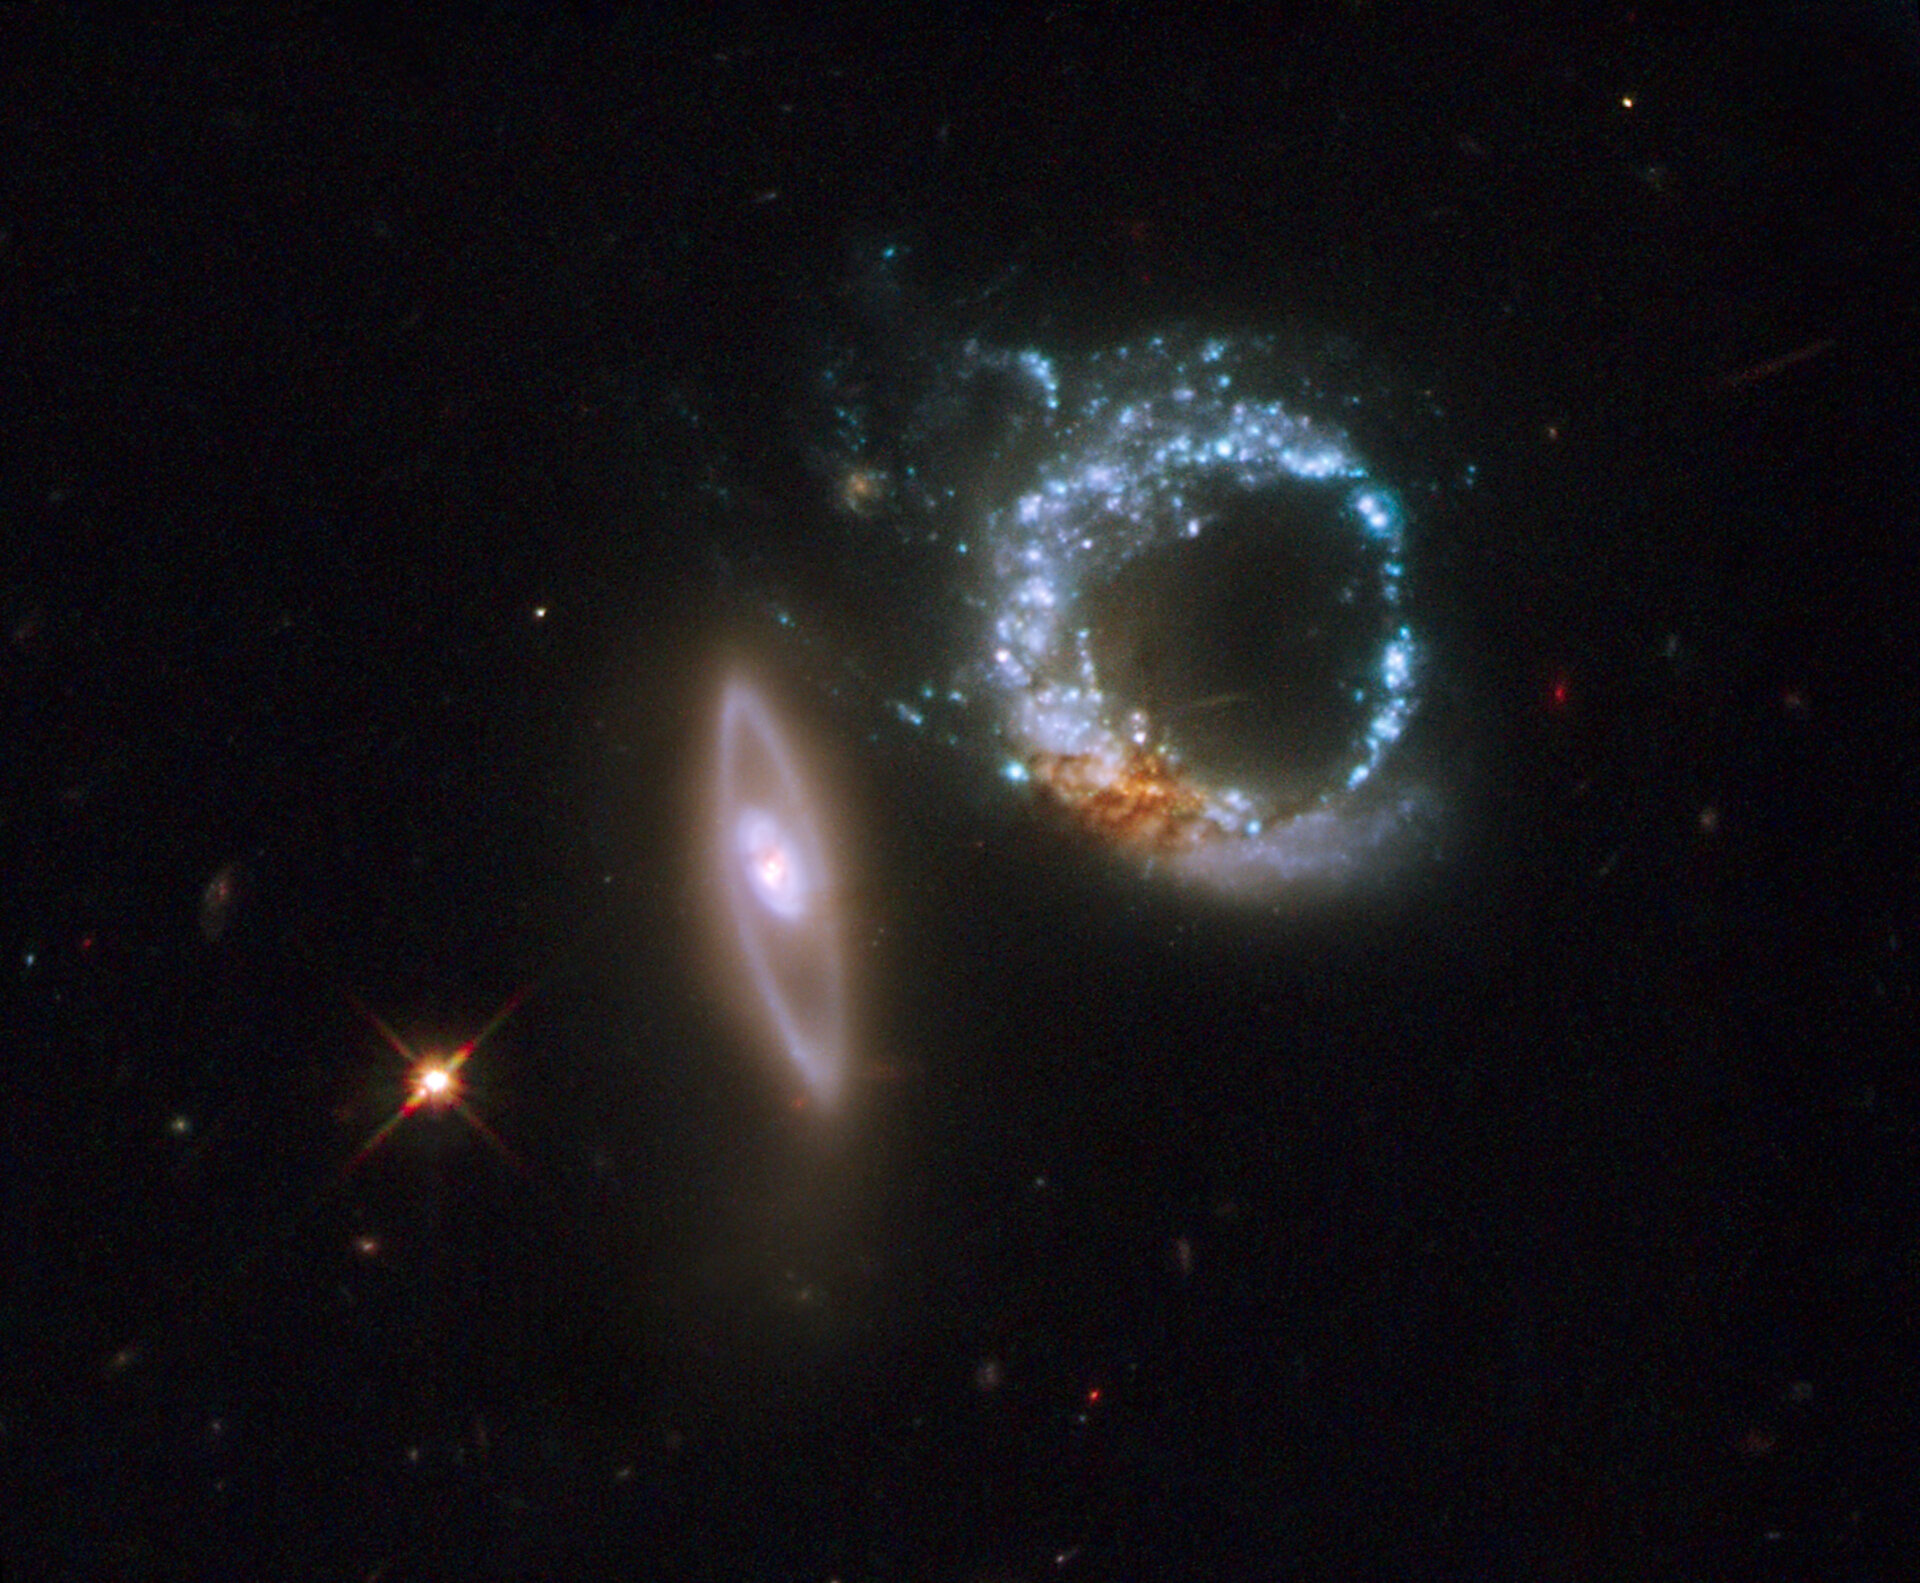 As galáxias em interacção Arp 147